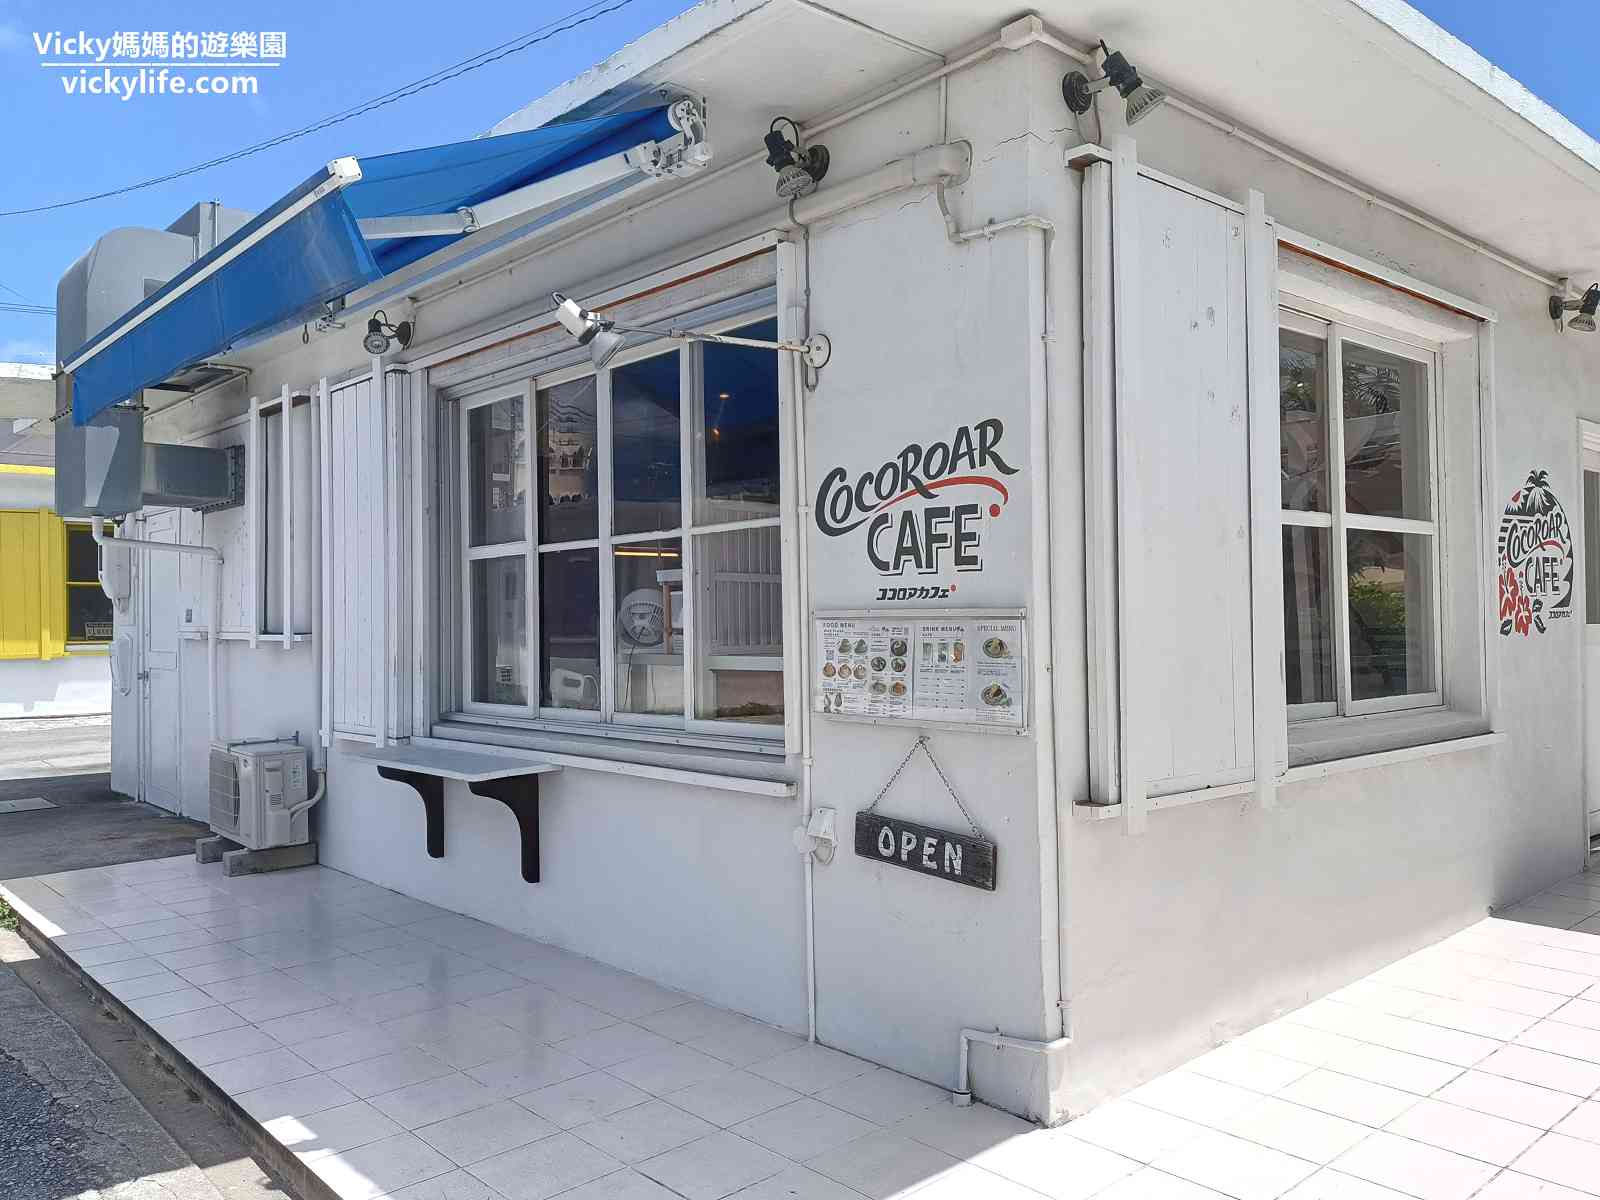 沖繩︱港川外人住宅 （美軍宿舍改建購物街 StateSide Town）：整個聚落都是可愛特色小店，像台灣眷村，COCOROAR CAFE舒芙蕾好吃